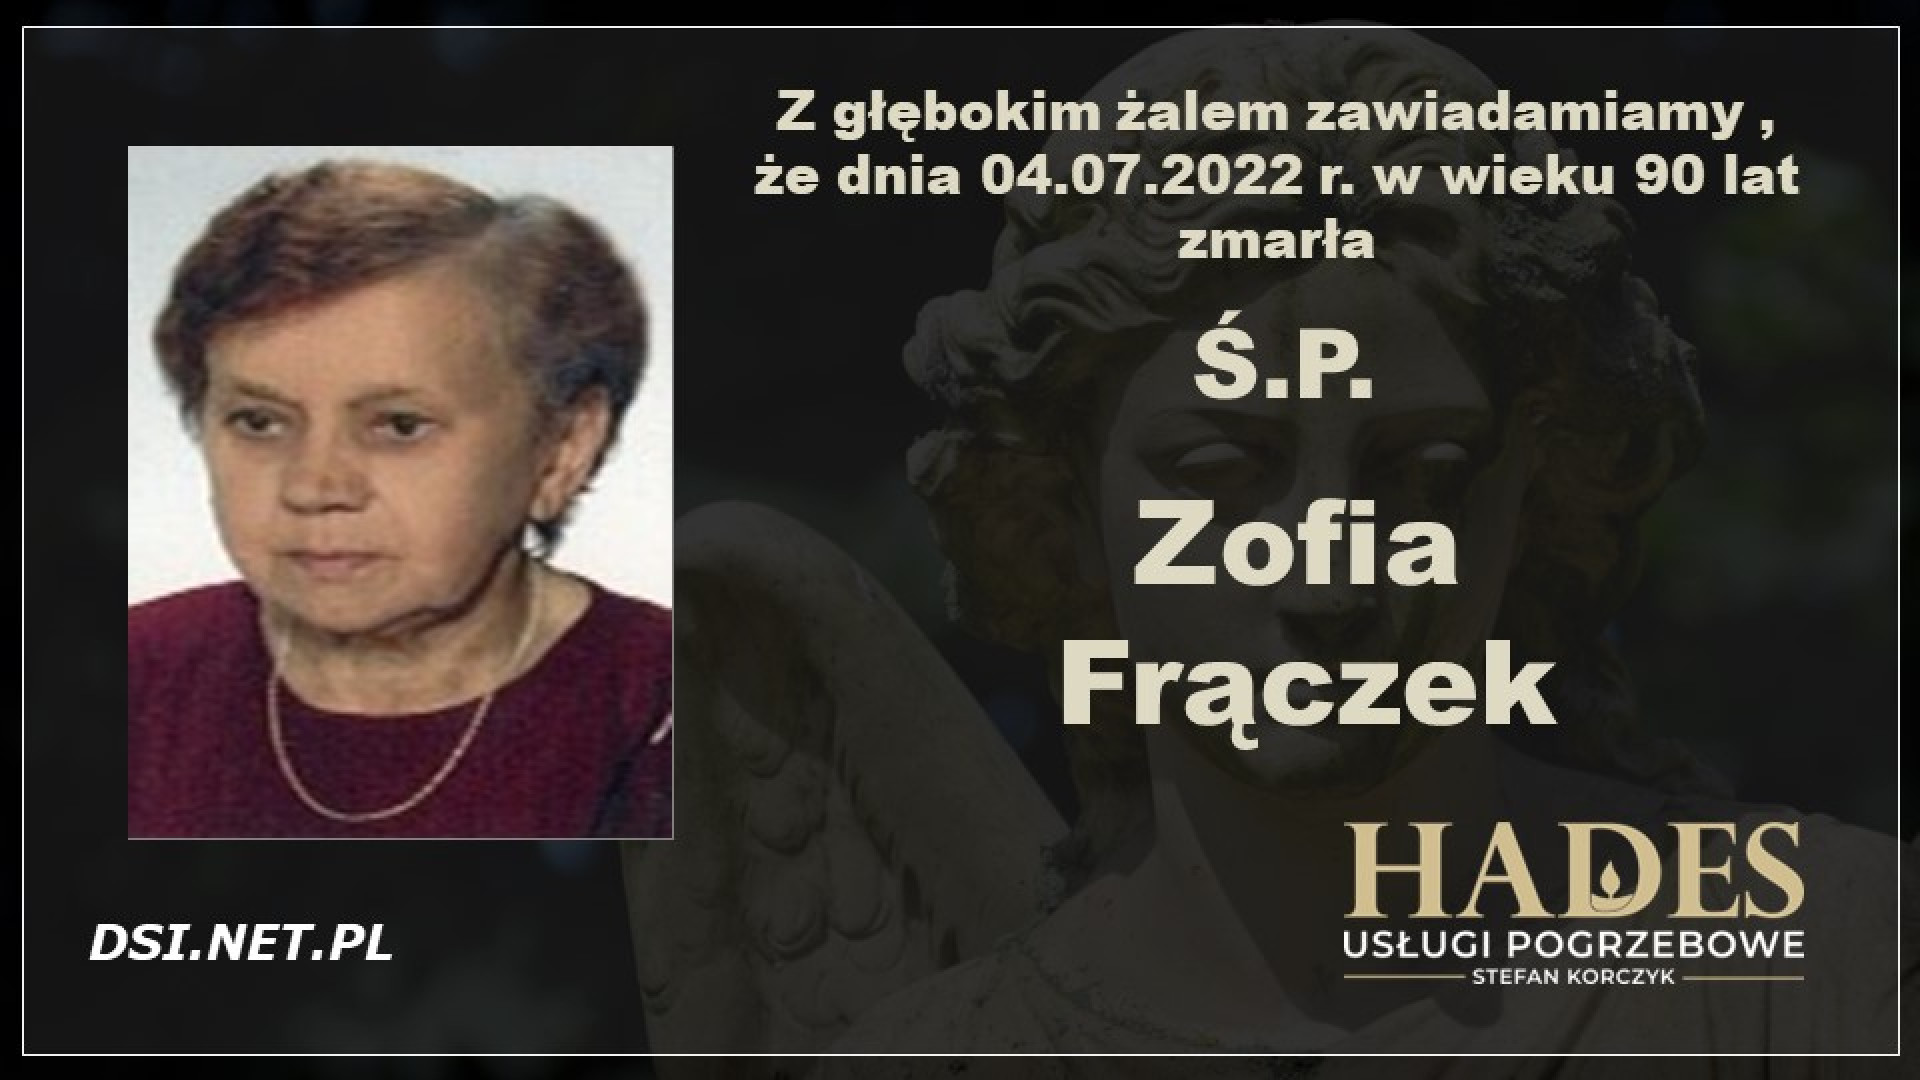 Ś.P. Zofia Frączek